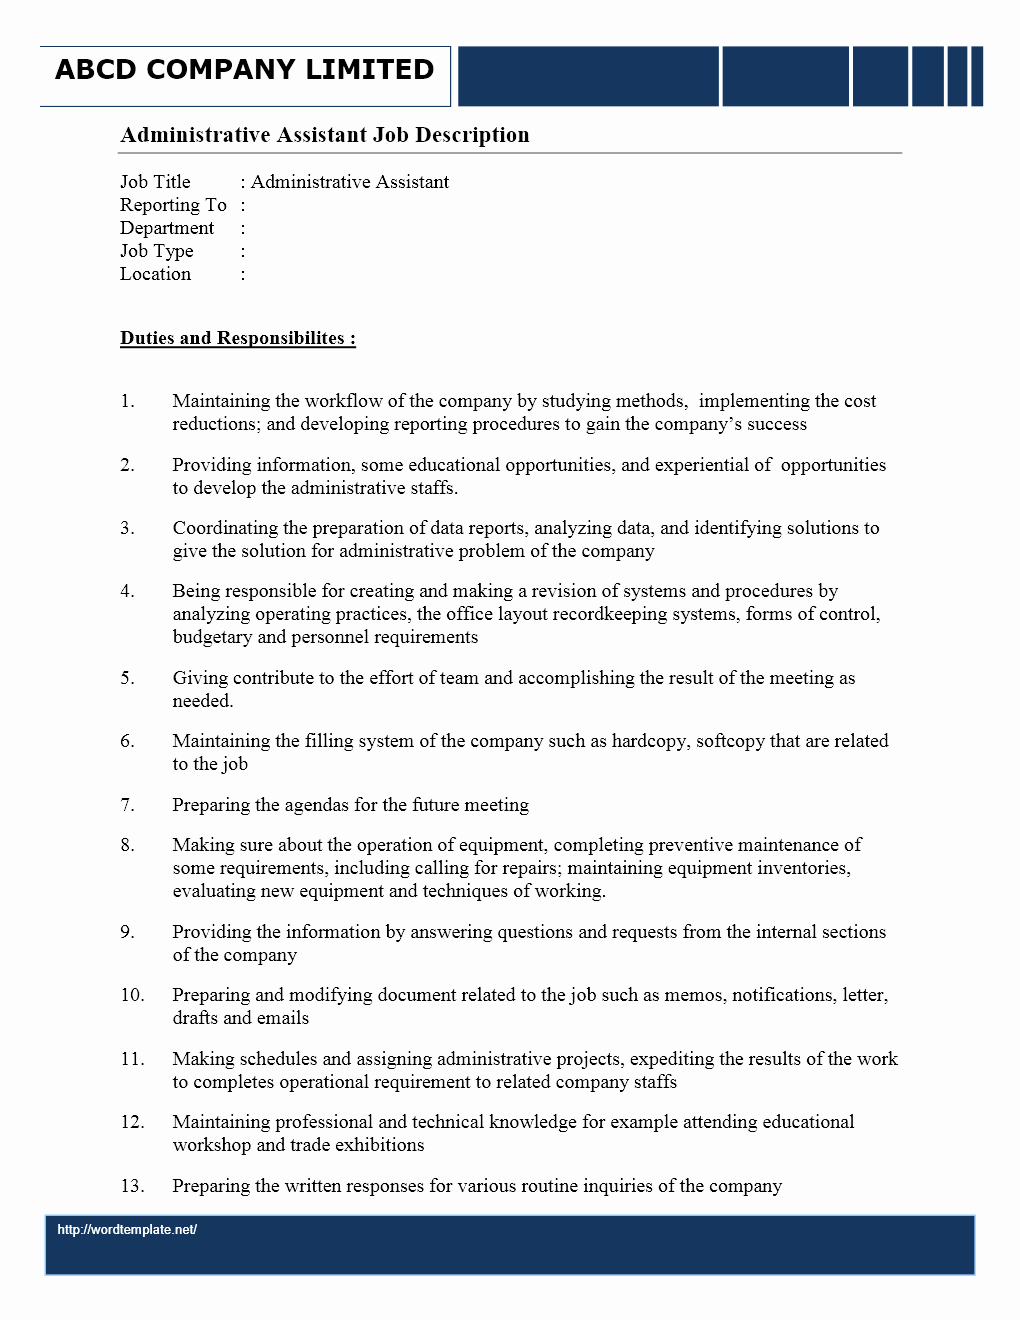 Administrative assistant Job Description Fice Sample